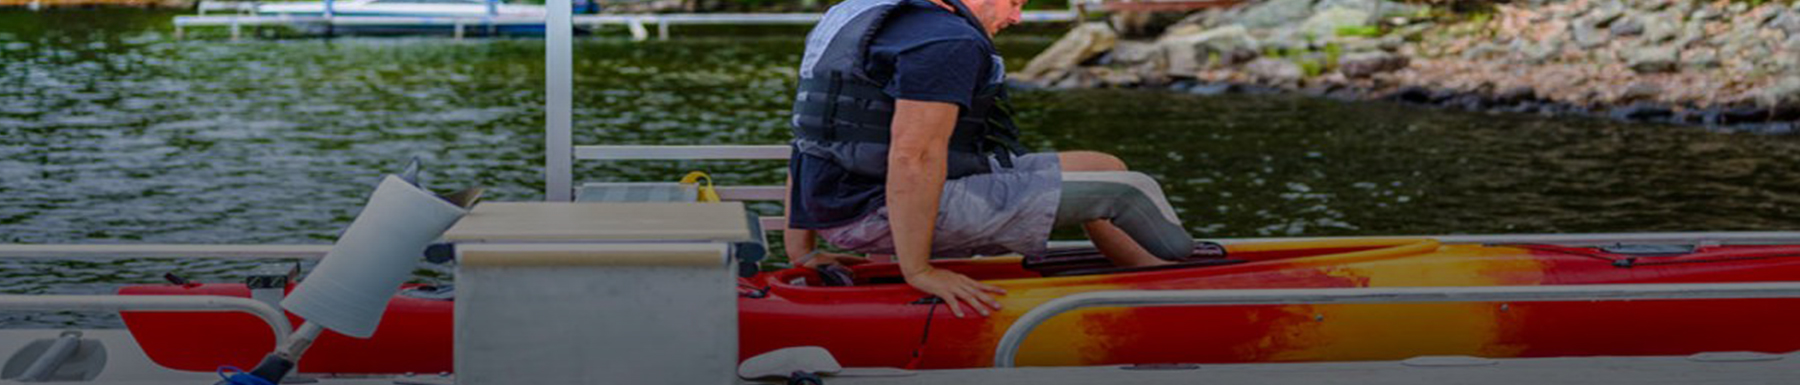 Man preparing to sit in kayak